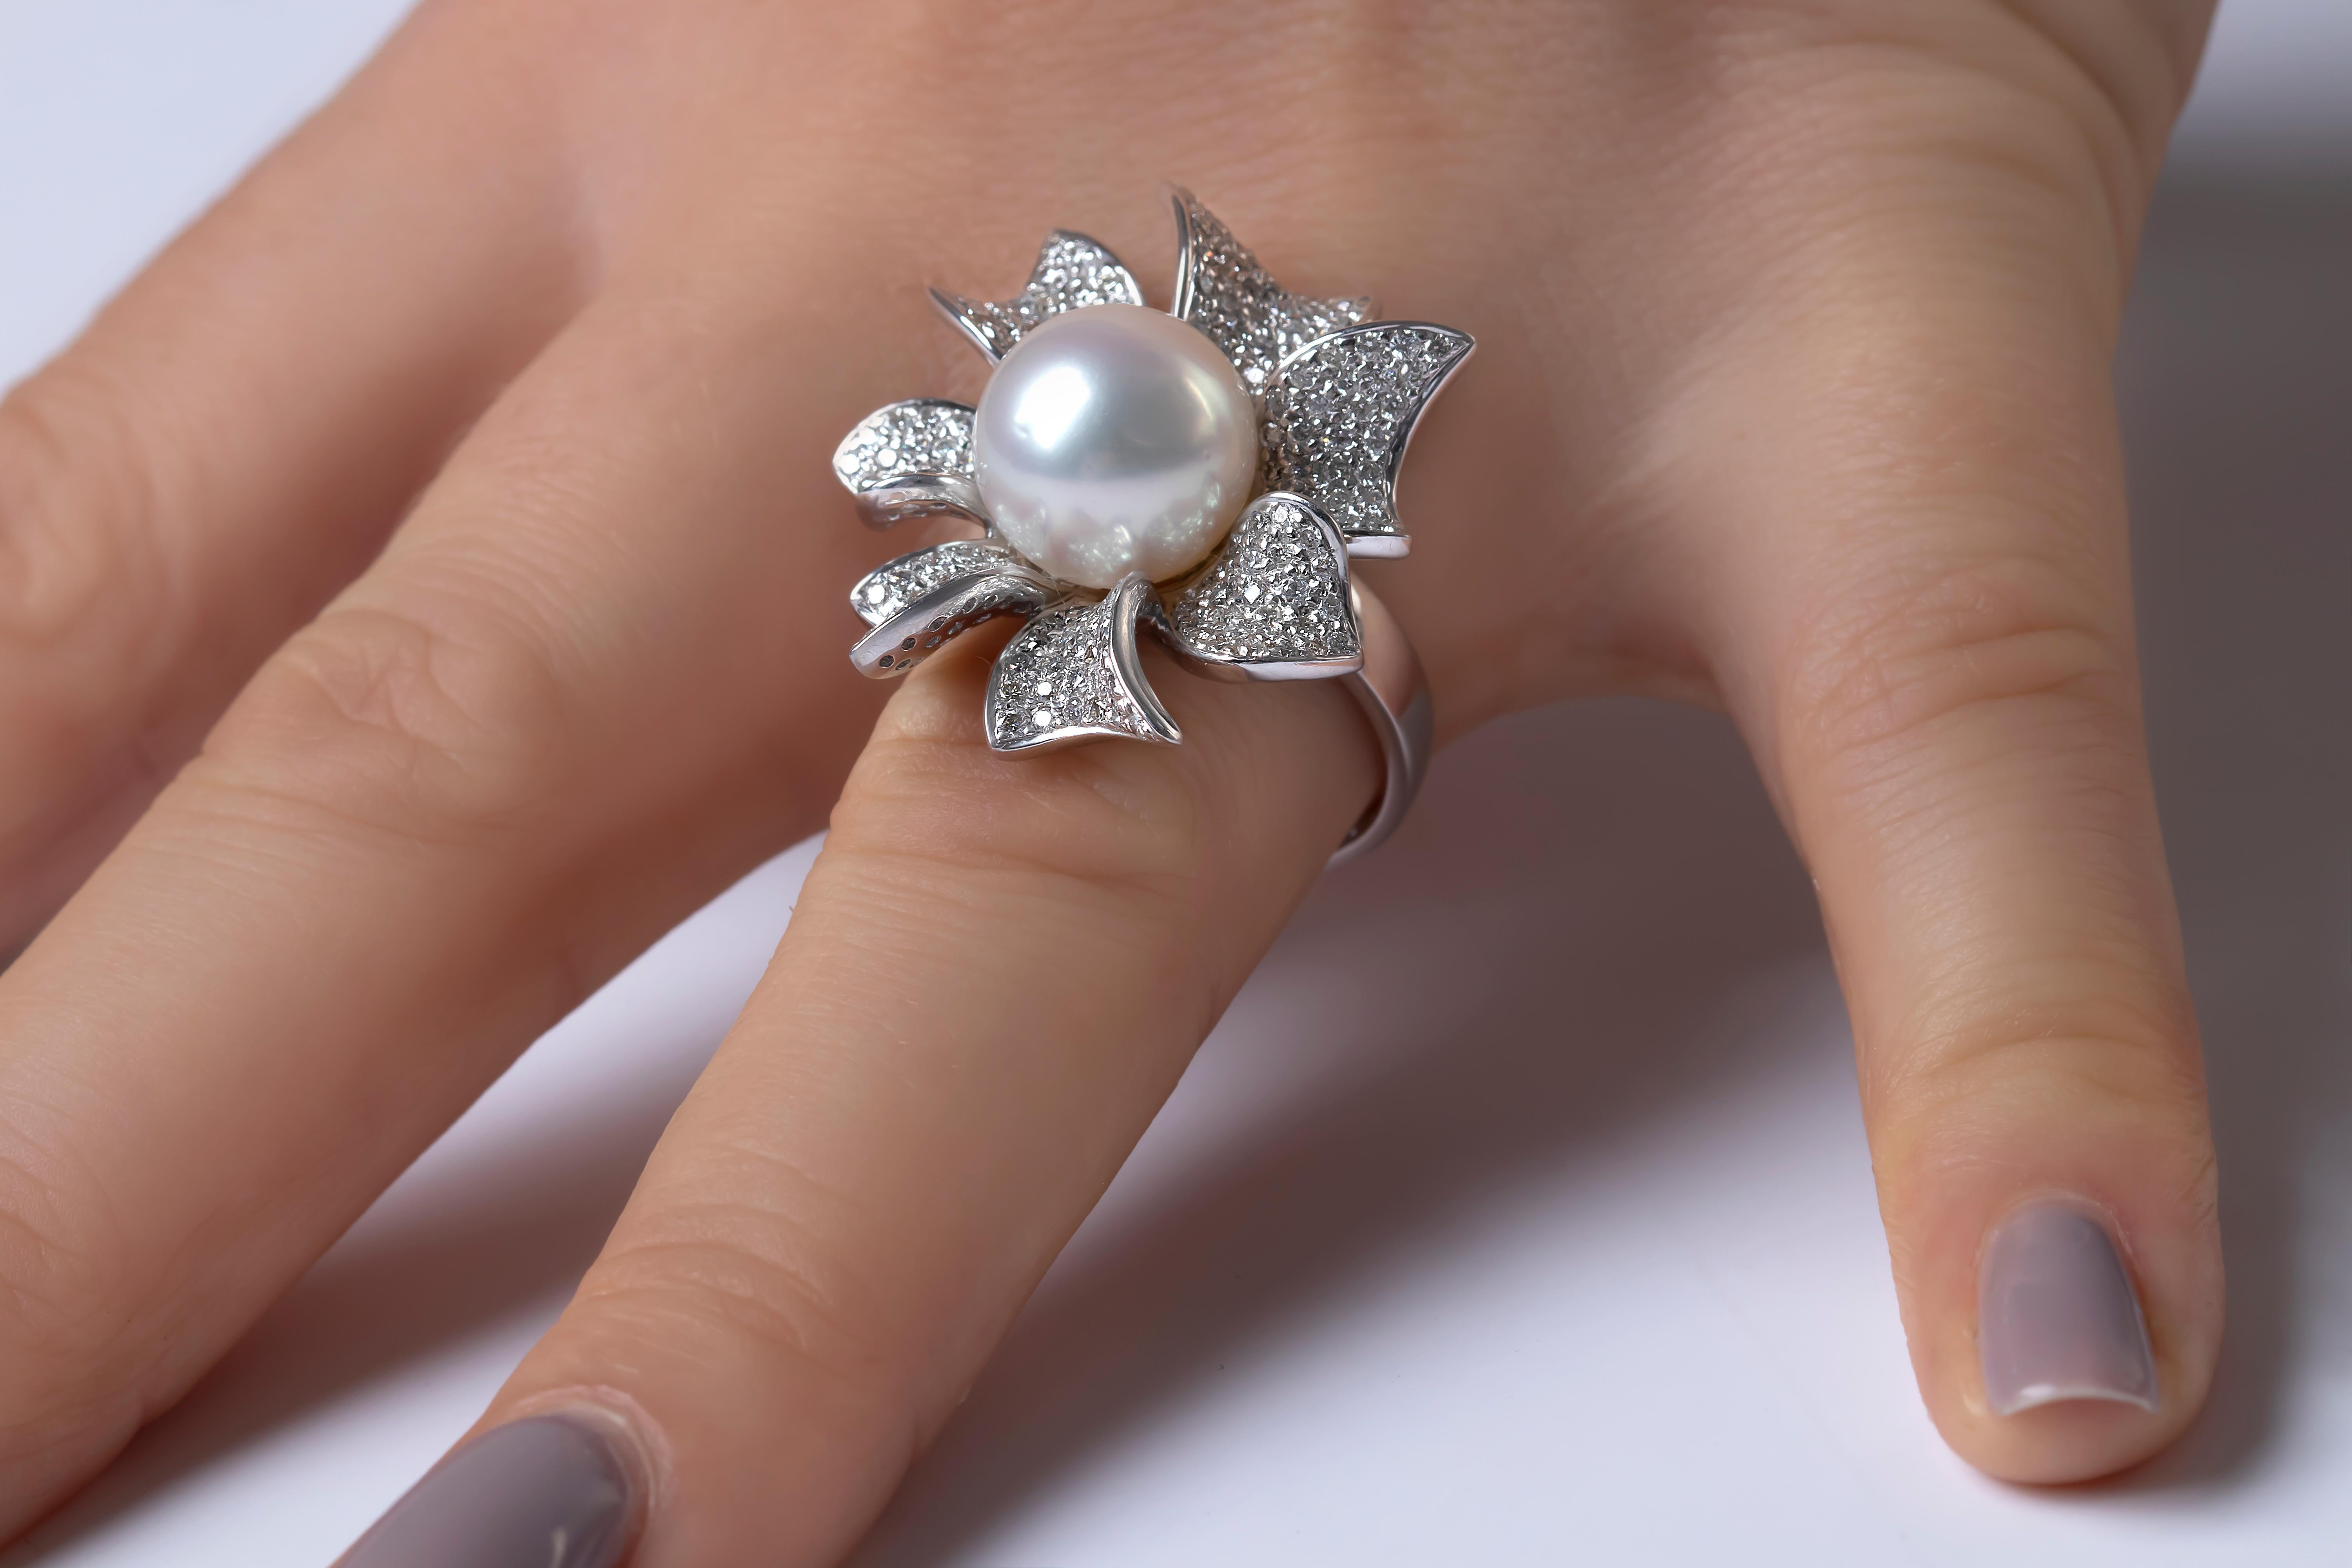 Dieser filigrane Ring von Yoko London zeigt eine hochwertige Südseeperle, die von funkelnden Diamantbändern umgeben ist. Einzigartig und auffallend, verleiht dieser außergewöhnliche Ring jedem Abendlook einen Hauch von High Glamour.  
-11-12mm